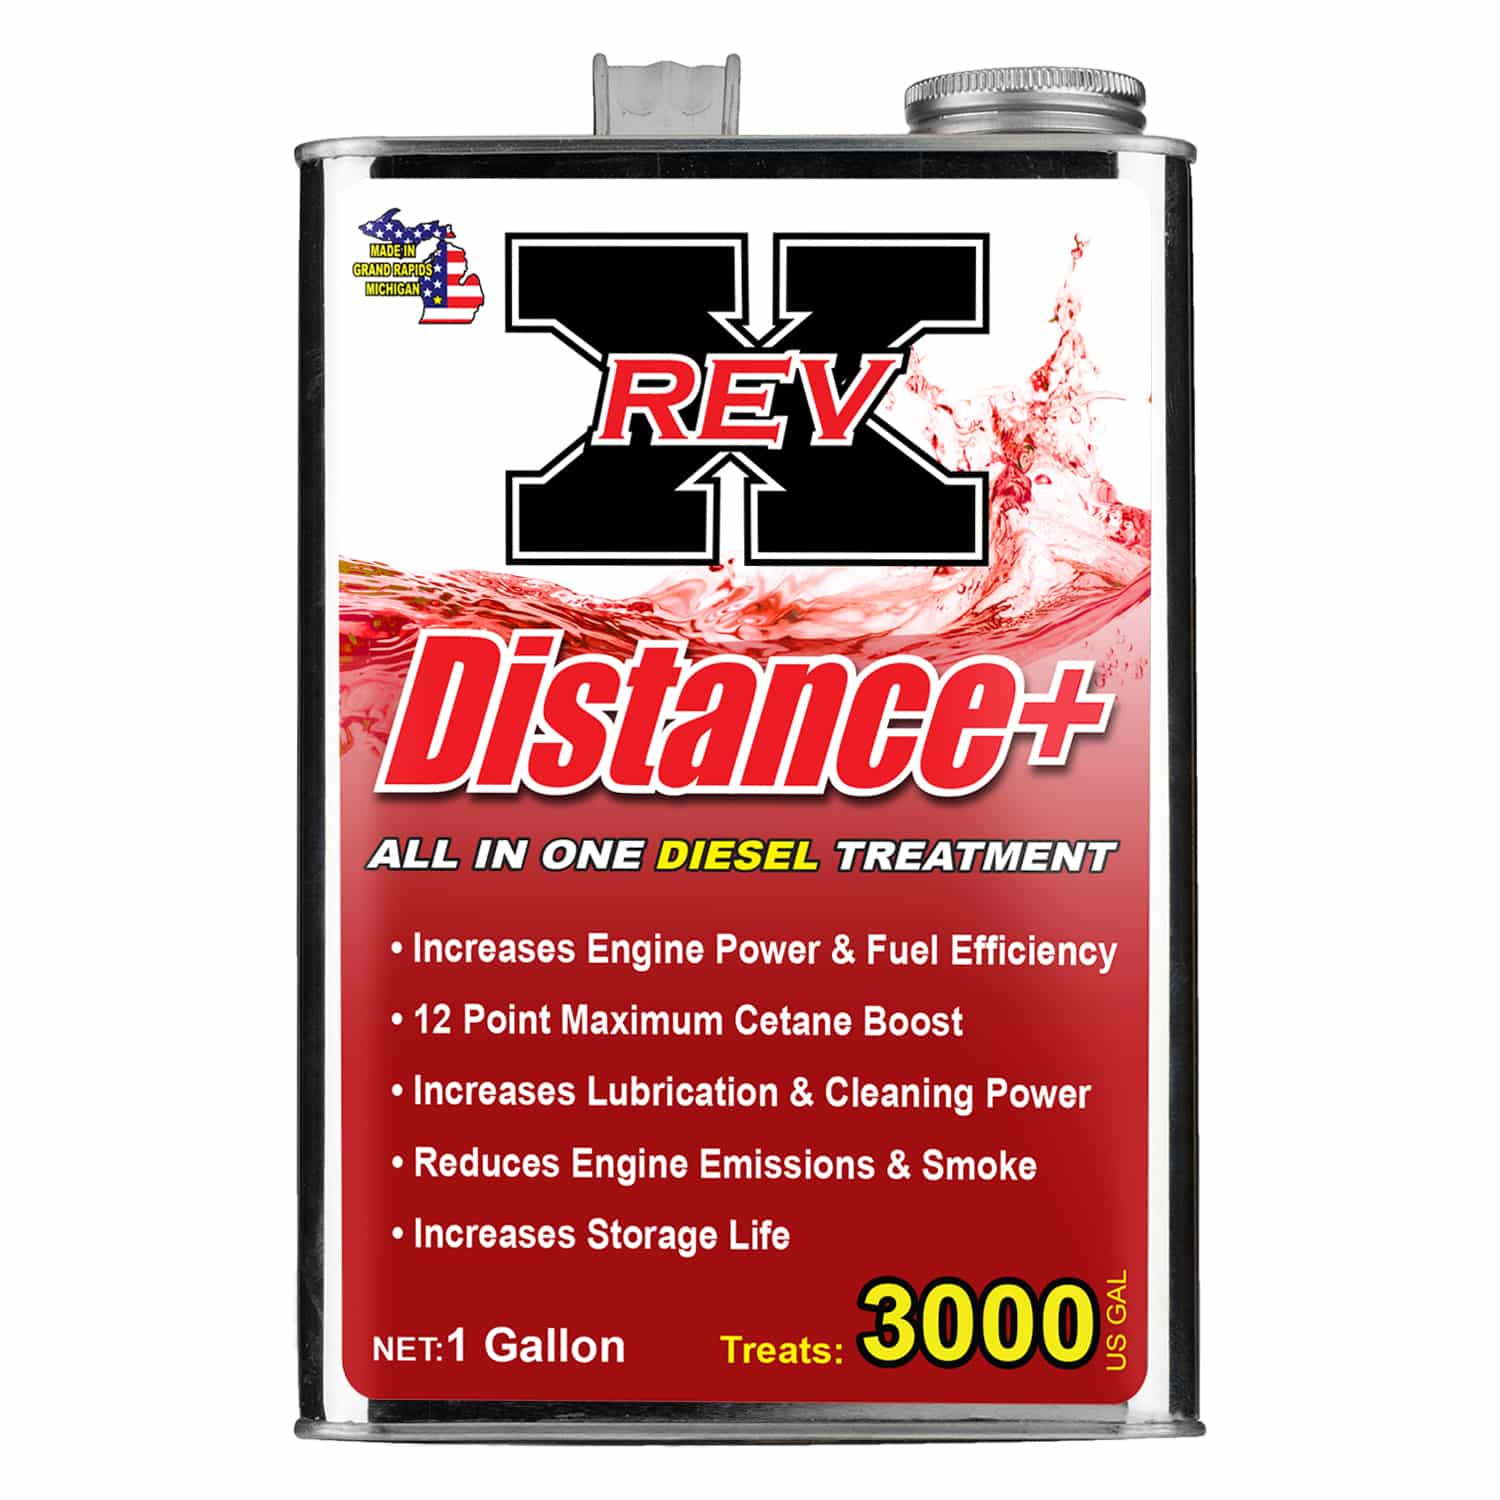 DIS01G01 – REV X Diesel Treatment – 1 Gallon